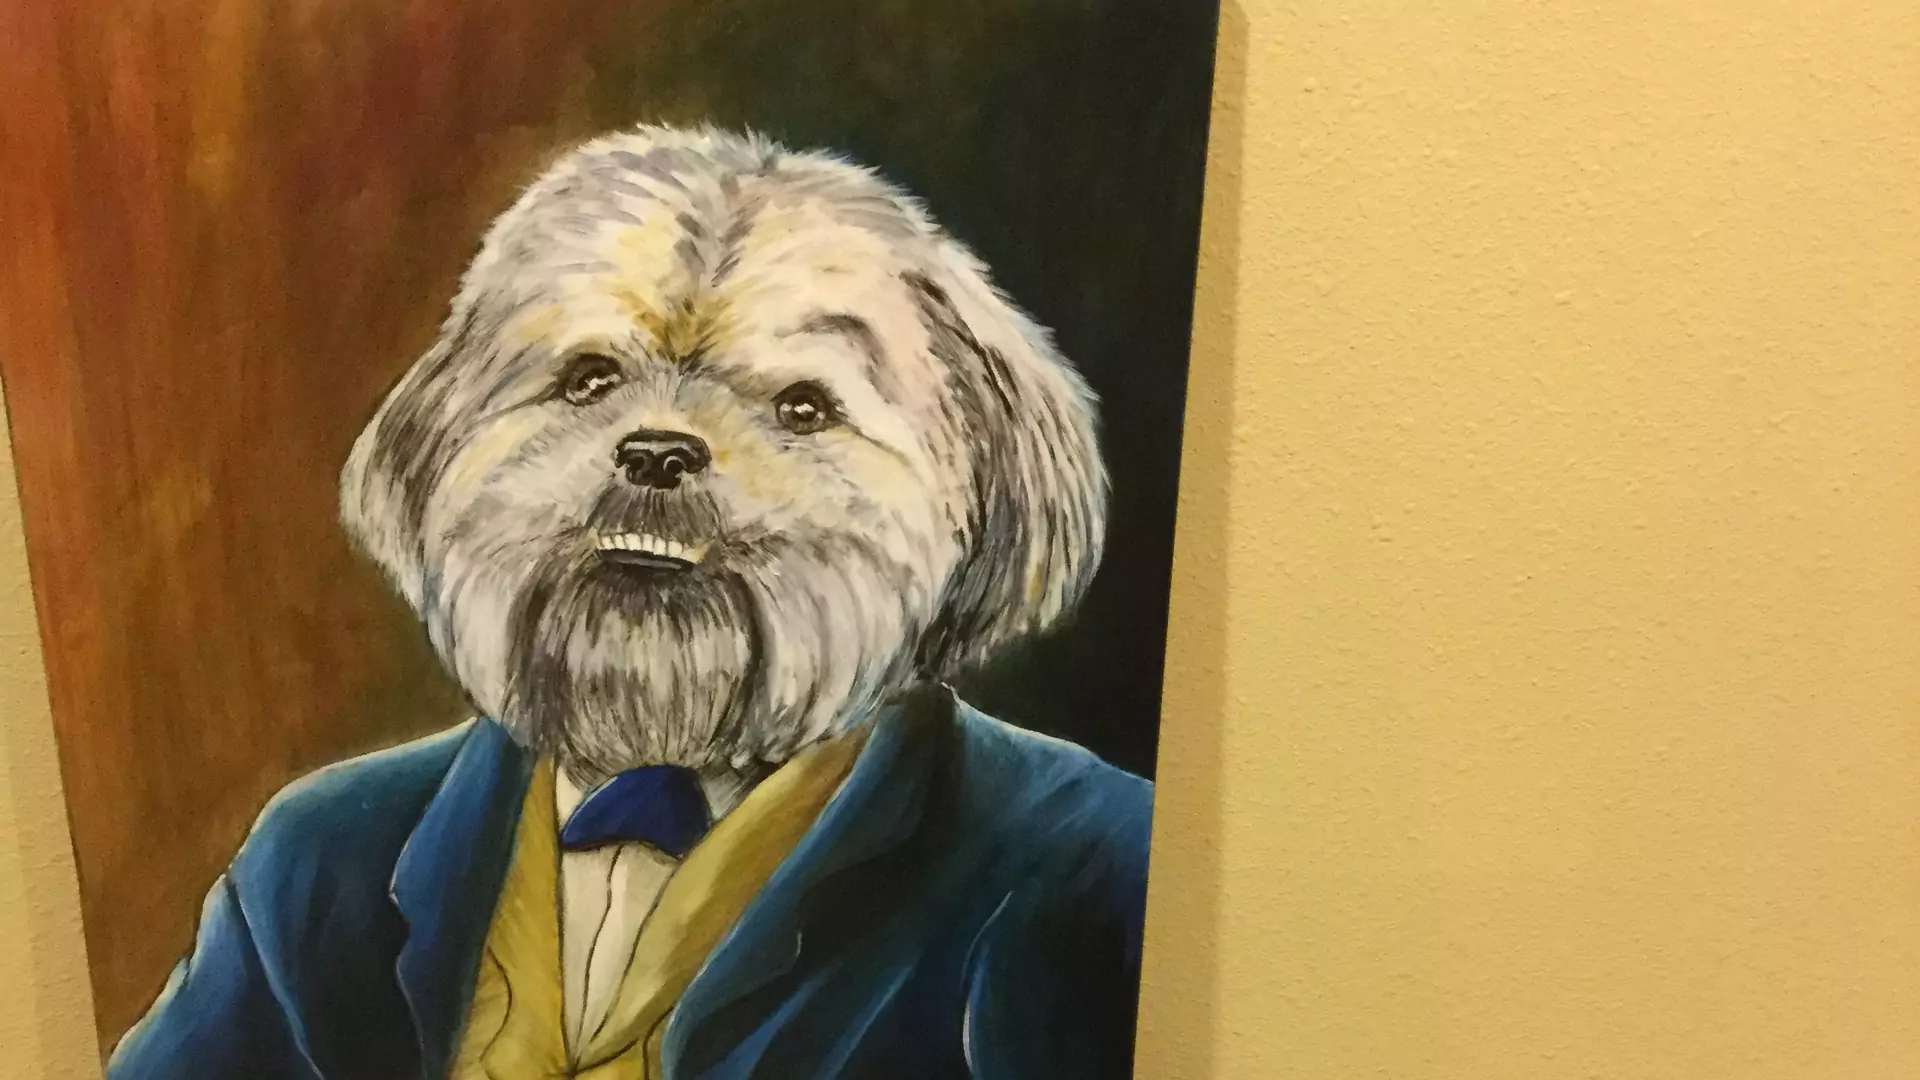 Pies otrzymuje wielki portret siebie jako arystokraty. Nie może przestać się uśmiechać